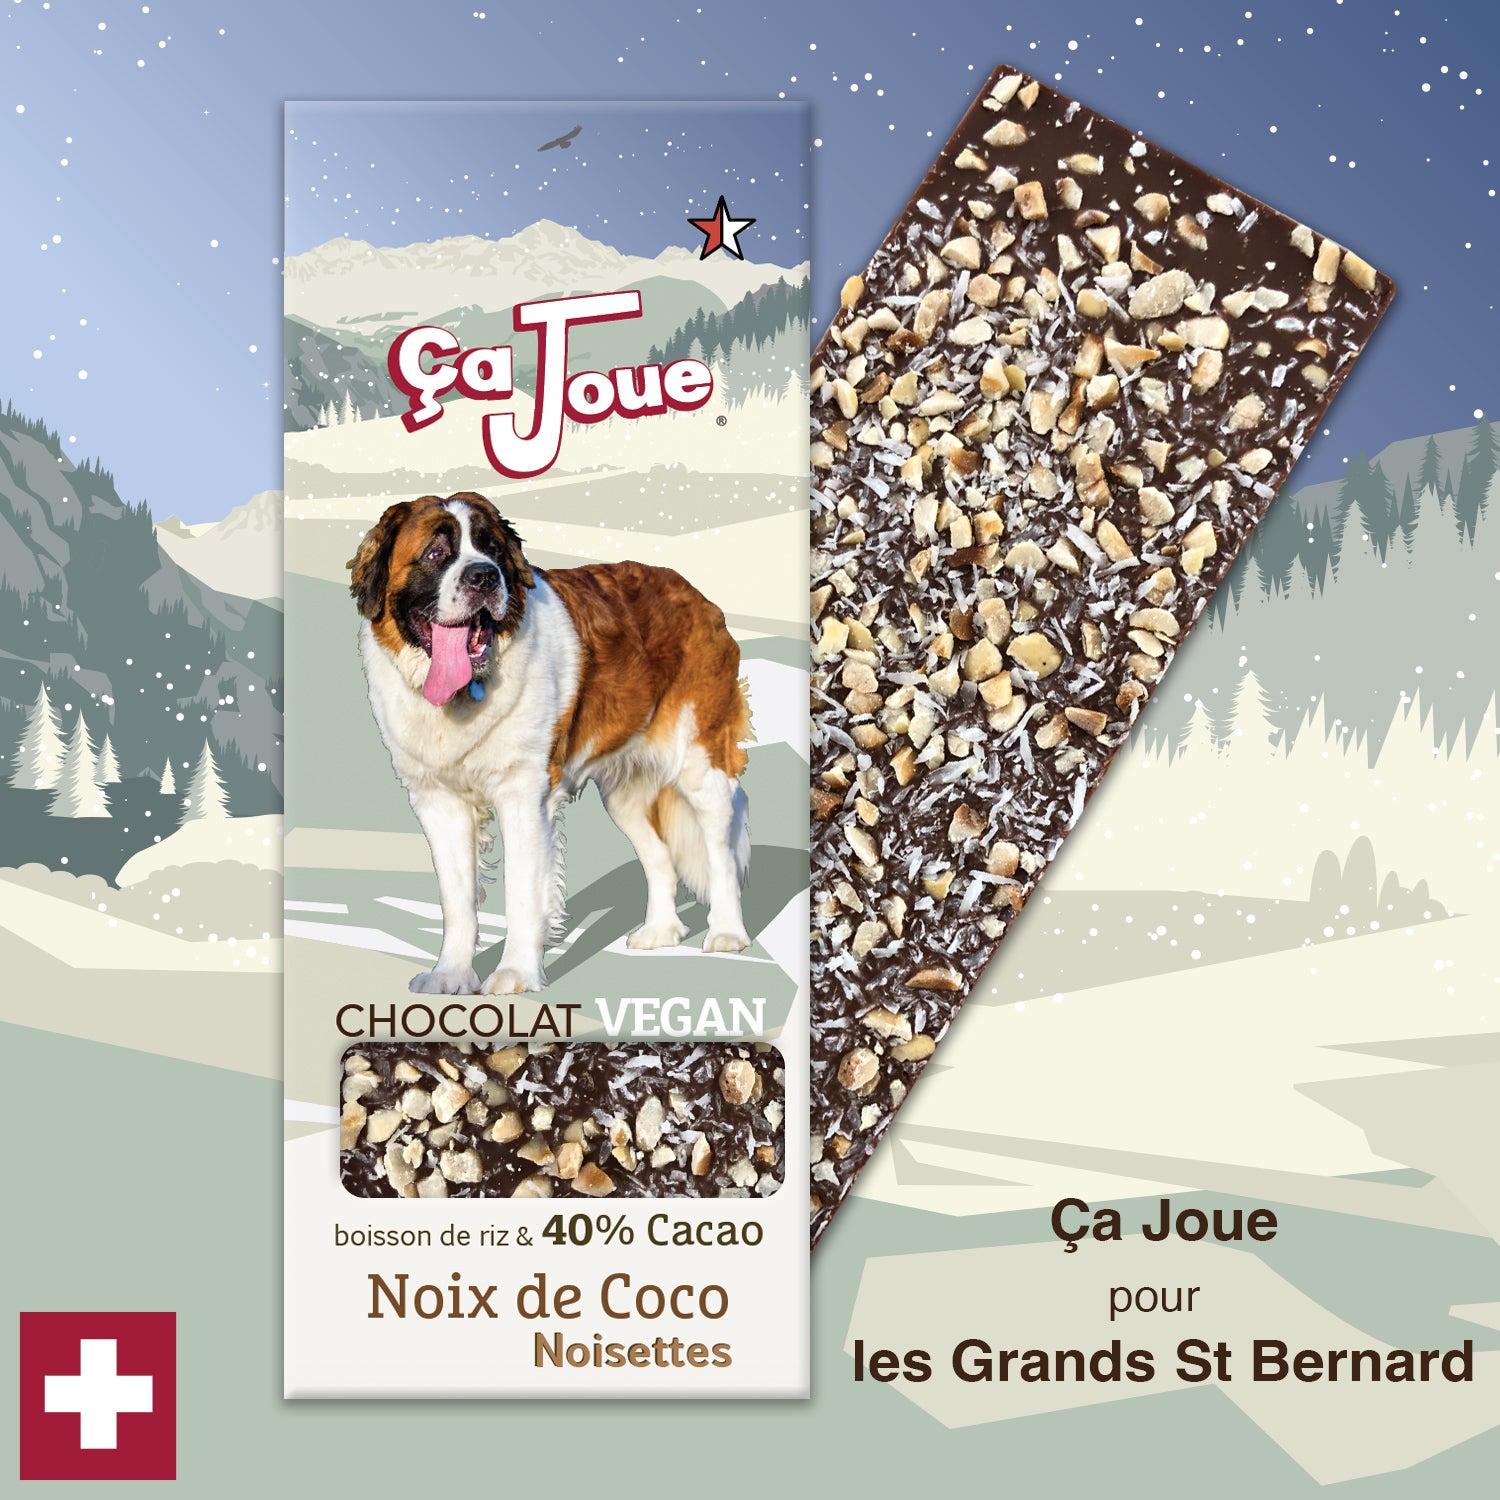 Ça Joue für die Freerider (Ref-BV2) Schokolade aus Val de Bagnes